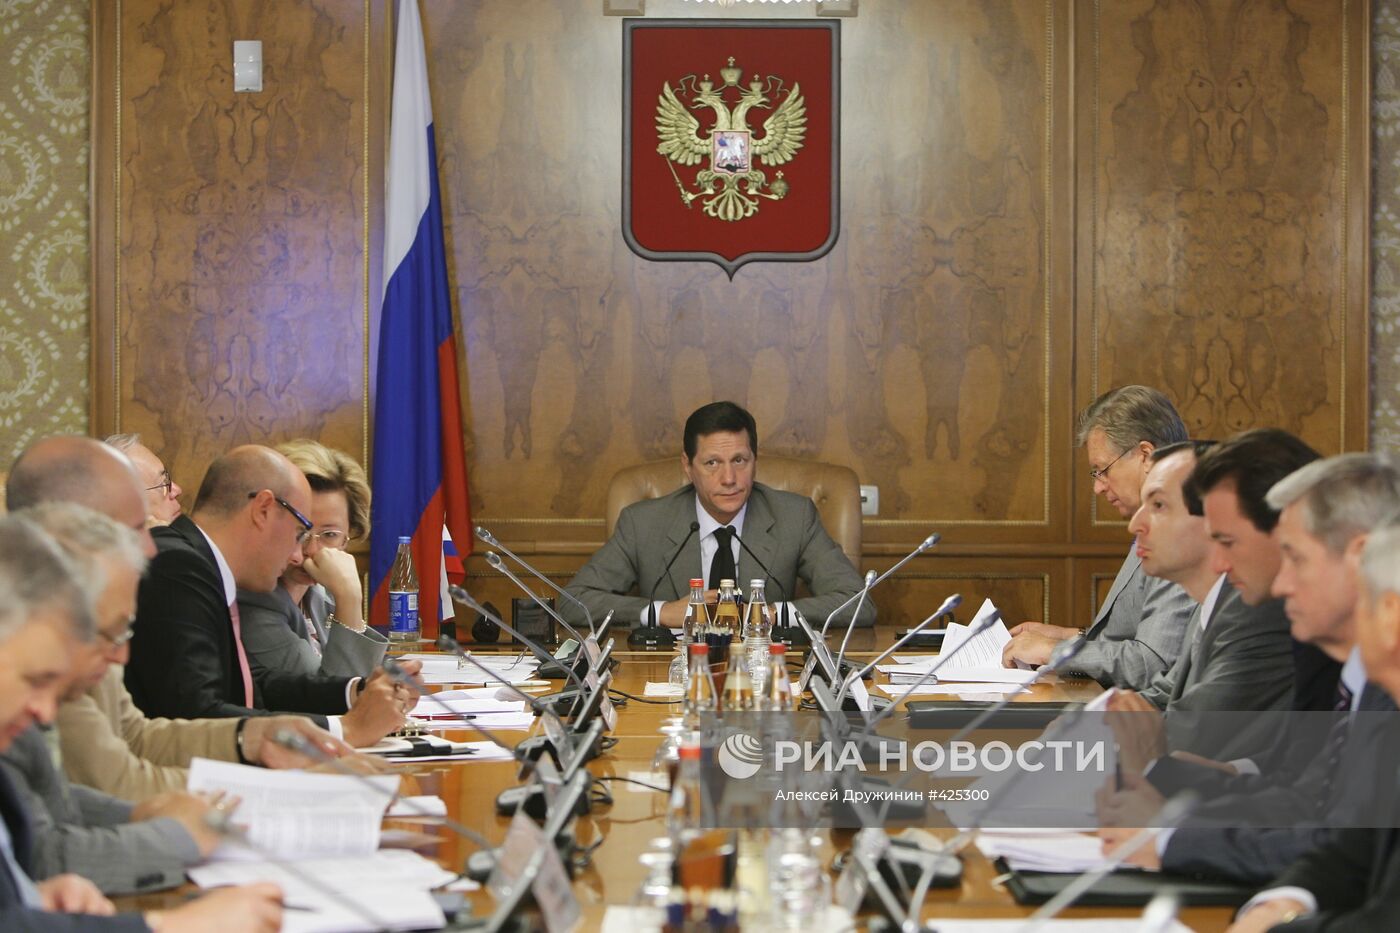 Вице-премьер РФ А.Жуков провел заседание в Доме правительства РФ